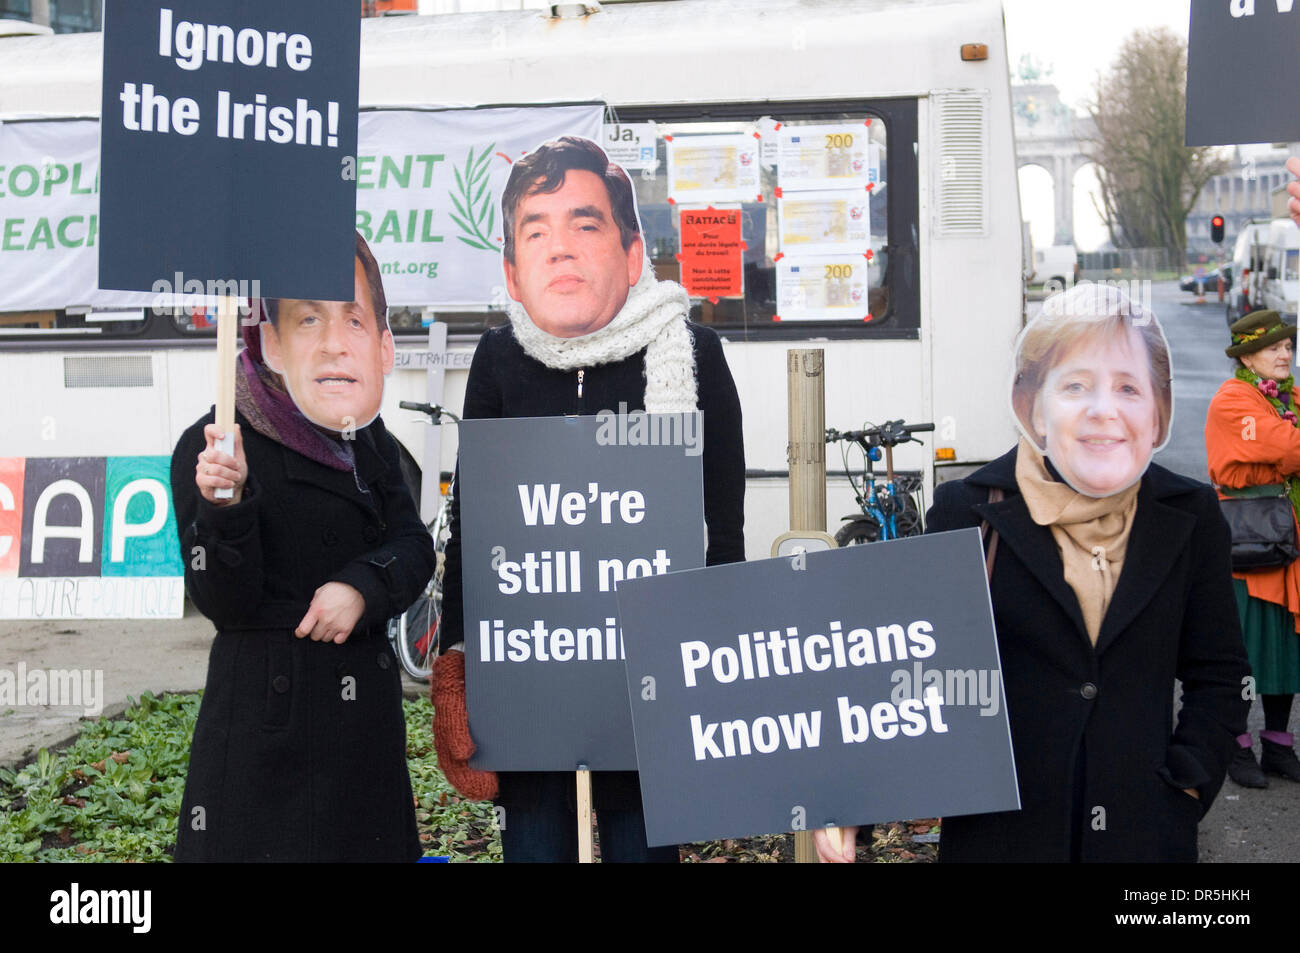 11. Dezember 2008 - Brüssel, Belgien - Demonstranten tragen Masken, die Darstellung von Nicolas Sarkozy und Angela Merkel, Gordon Brown, Brian Cowen Manuel Barroso während einer Demonstration in Brüssel am 2008-12-11. Die Gruppe, die Open Europe das Ereignis inszeniert zu protestieren, was sie glauben, sollen EU-Chefs ignorieren die Iren "Nein" und der Vertrag von Lissabon vorantreiben. (Kredit Imag Stockfoto